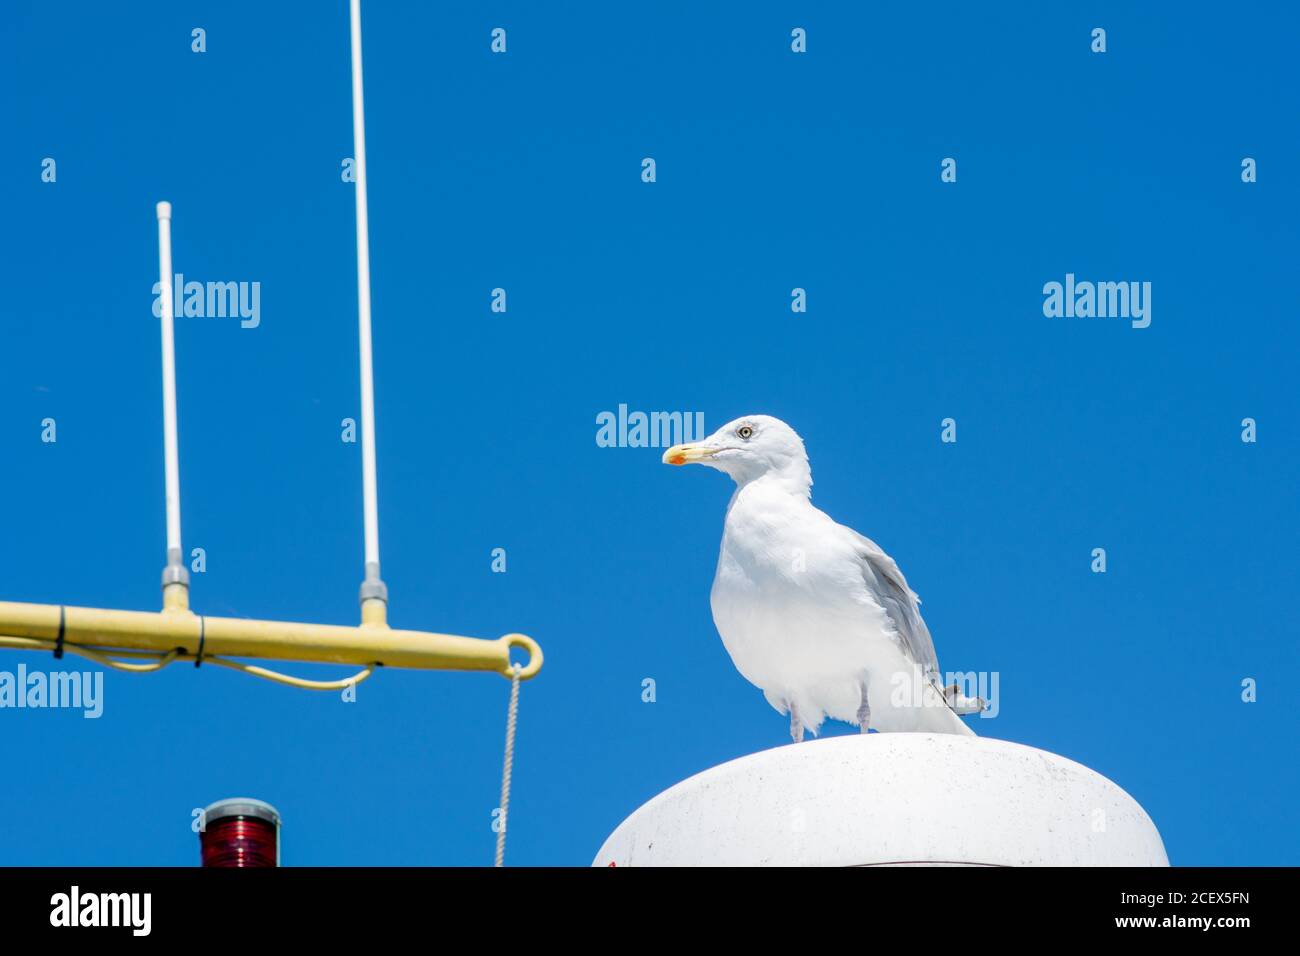 Un mouette blanche assise sur une lampe sur un bateau de pêche. Ciel bleu clair en arrière-plan Banque D'Images